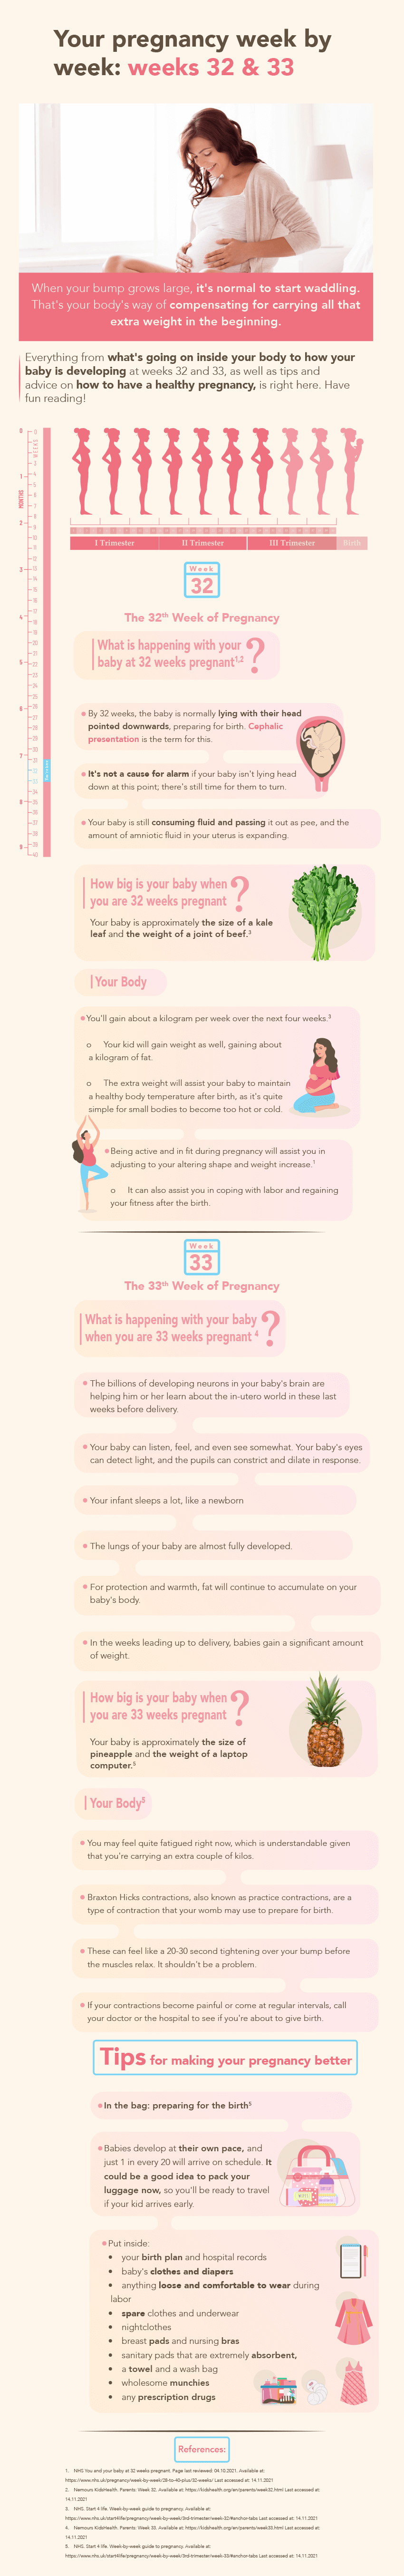 Pregnancy weeks 32&33